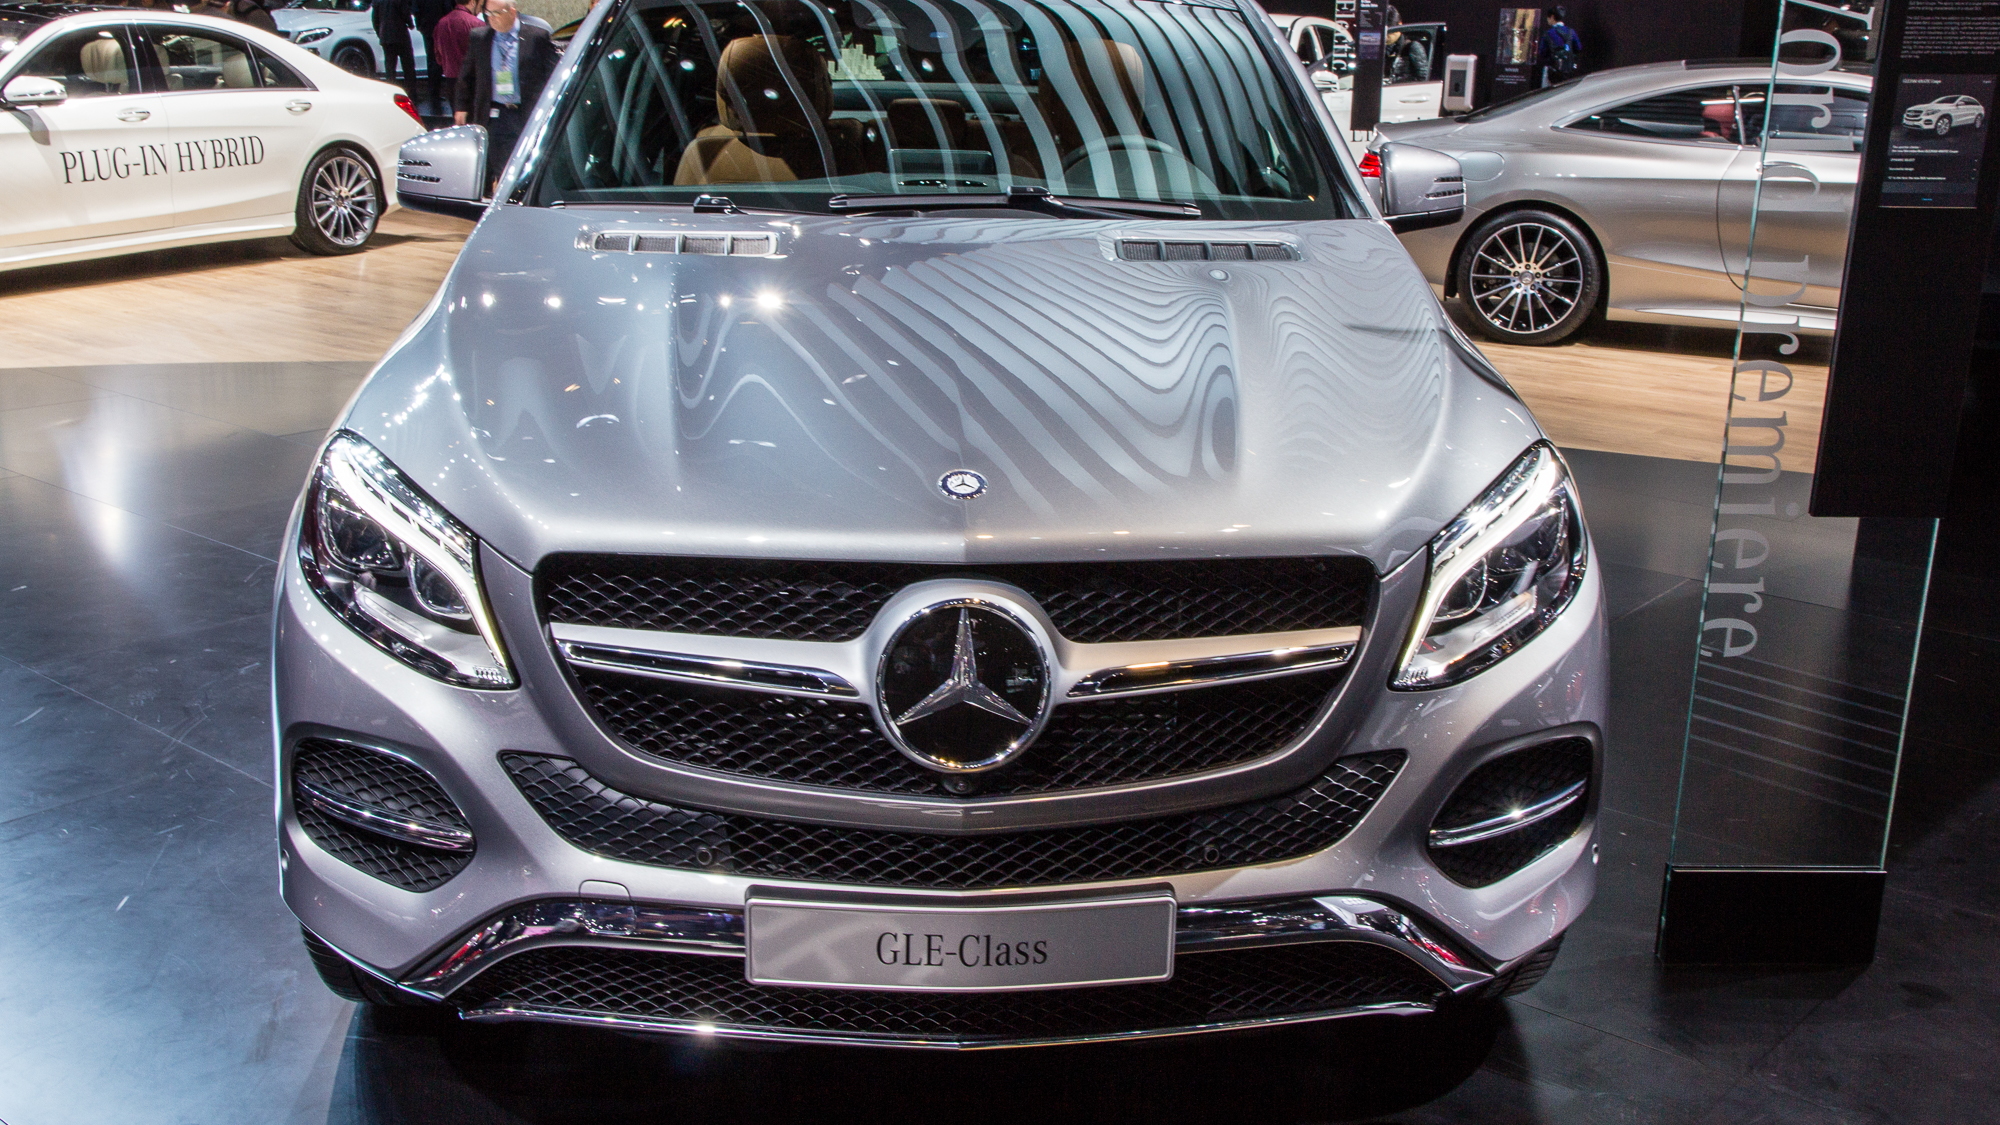 2016 Mercedes-Benz GLE Coupe live photos, 2015 Detroit Auto Show